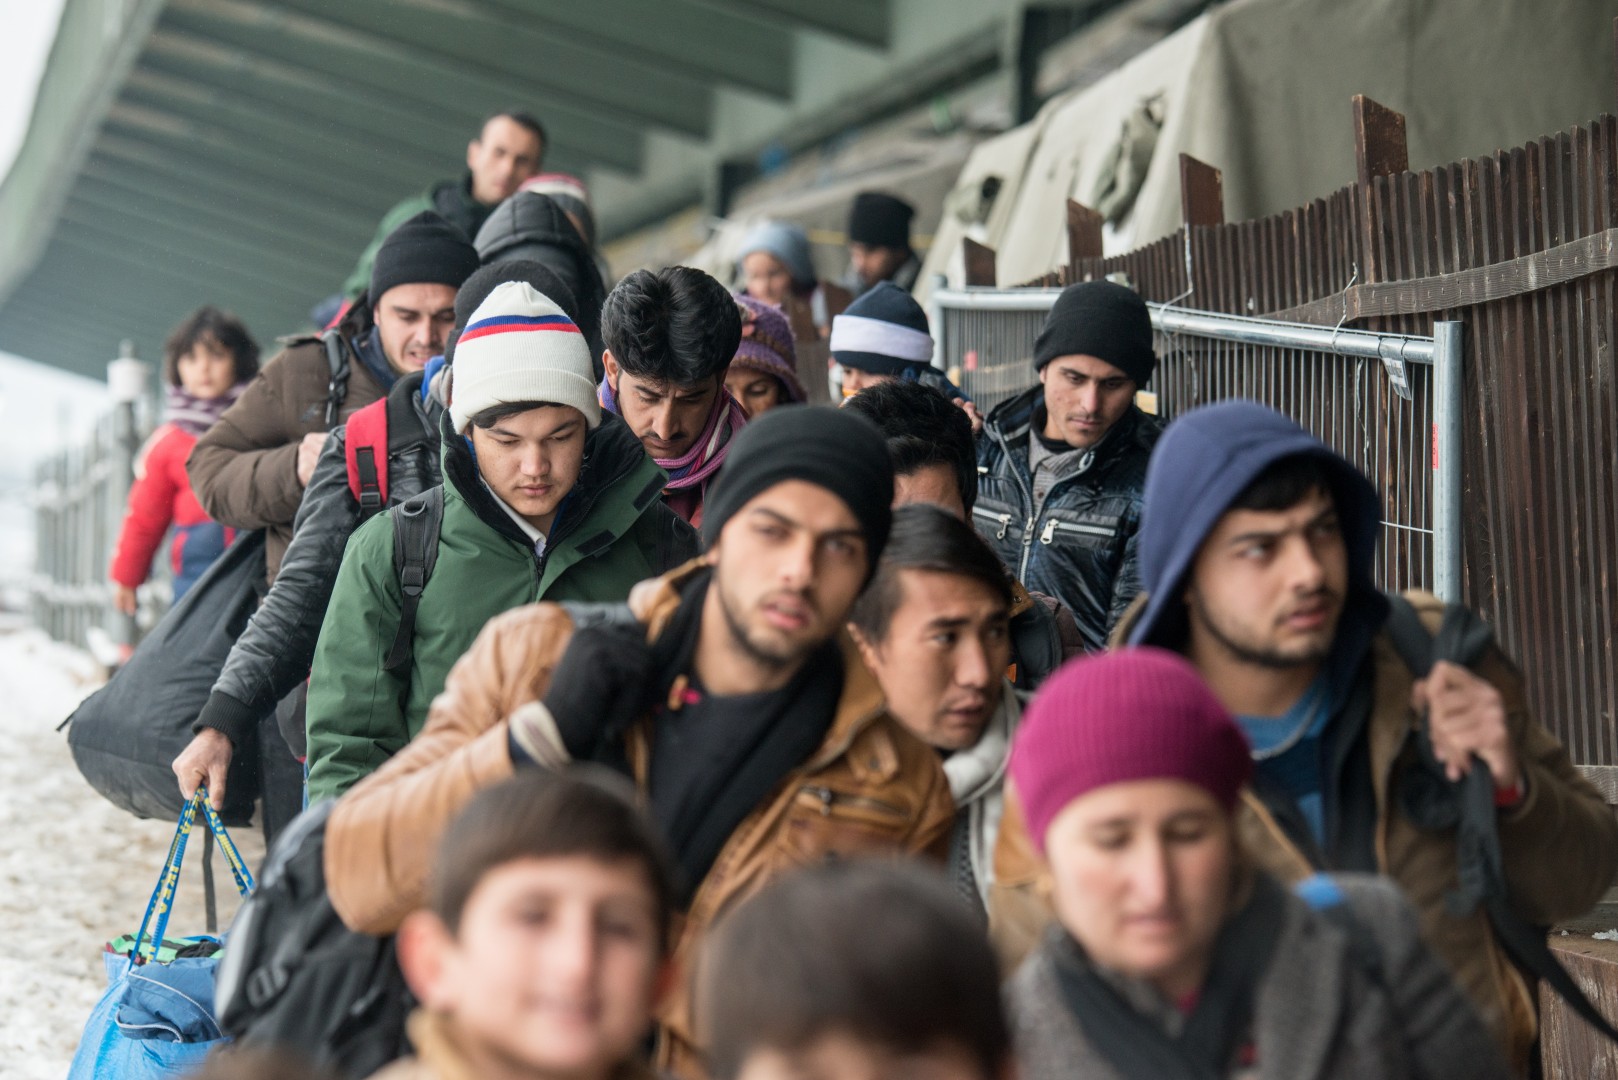 Группа эмигранты. Эмигранты в Германии. Мигранты в Германии. Мигранты мусульмане. Арабы в Германии.